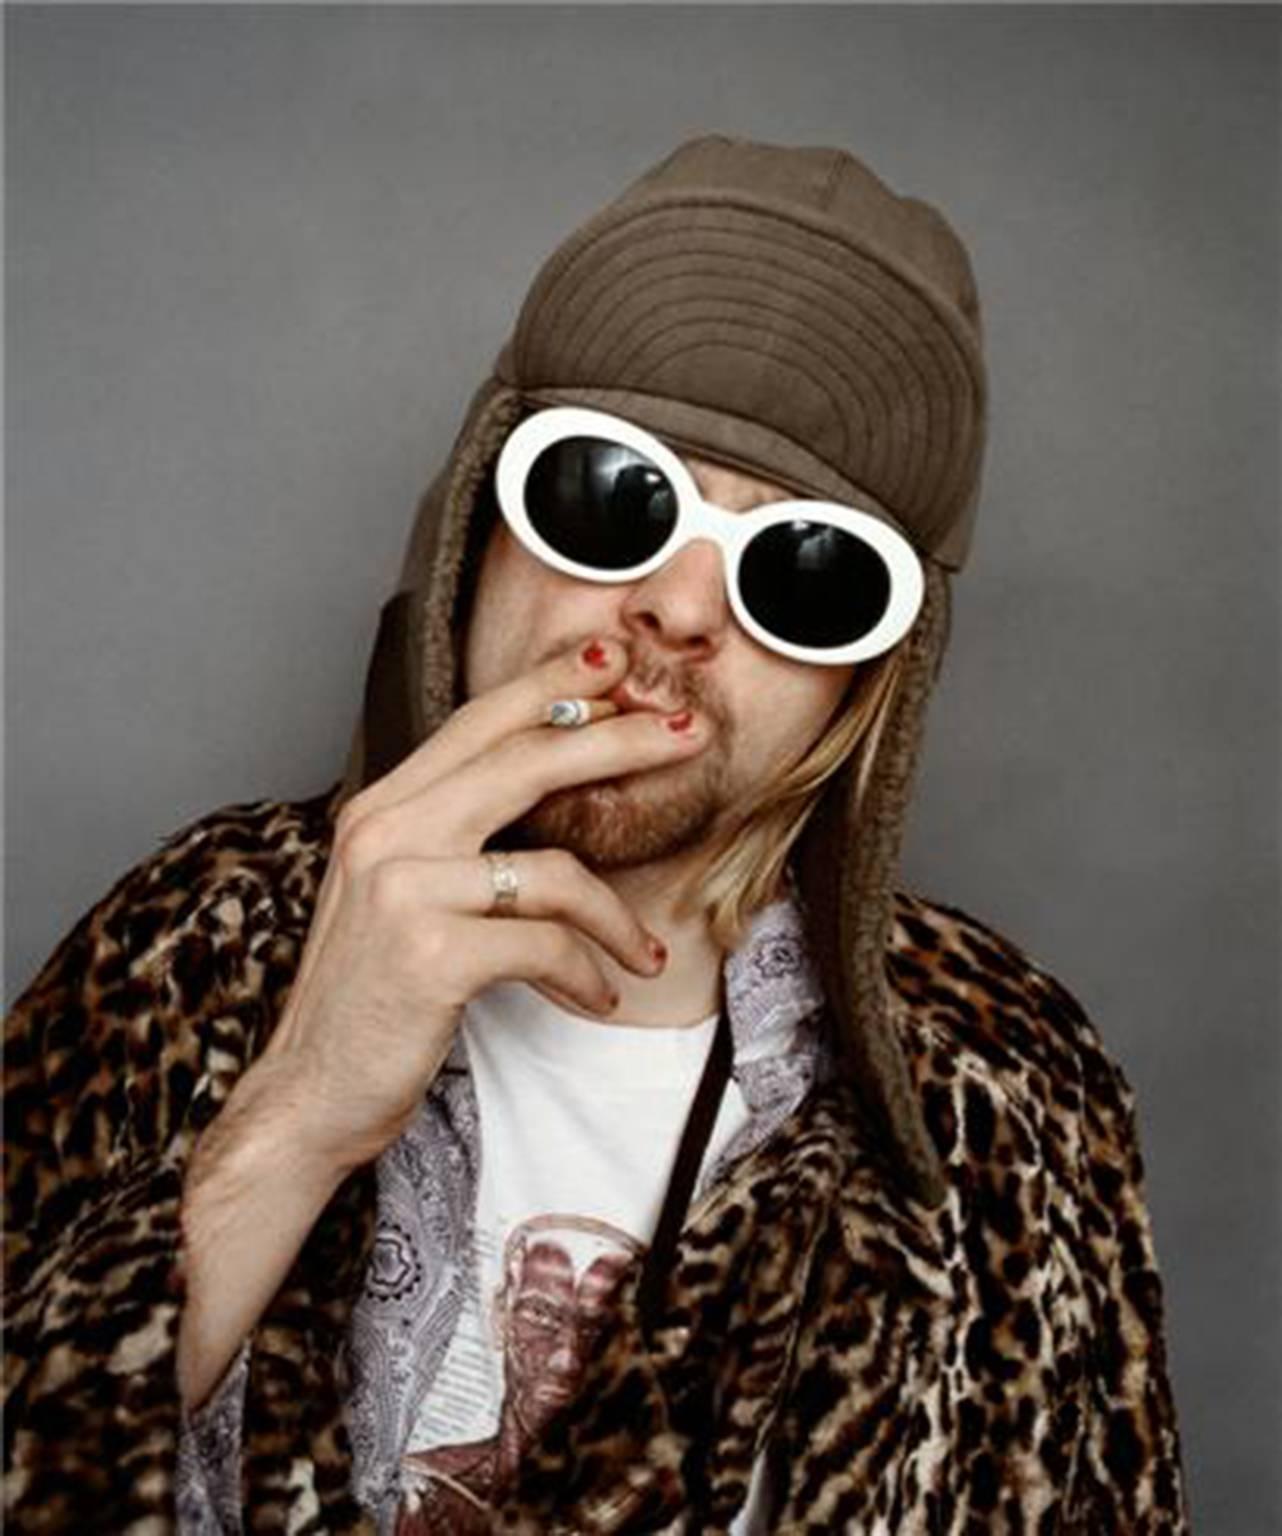 Kurt Cobain; "Smoking A"